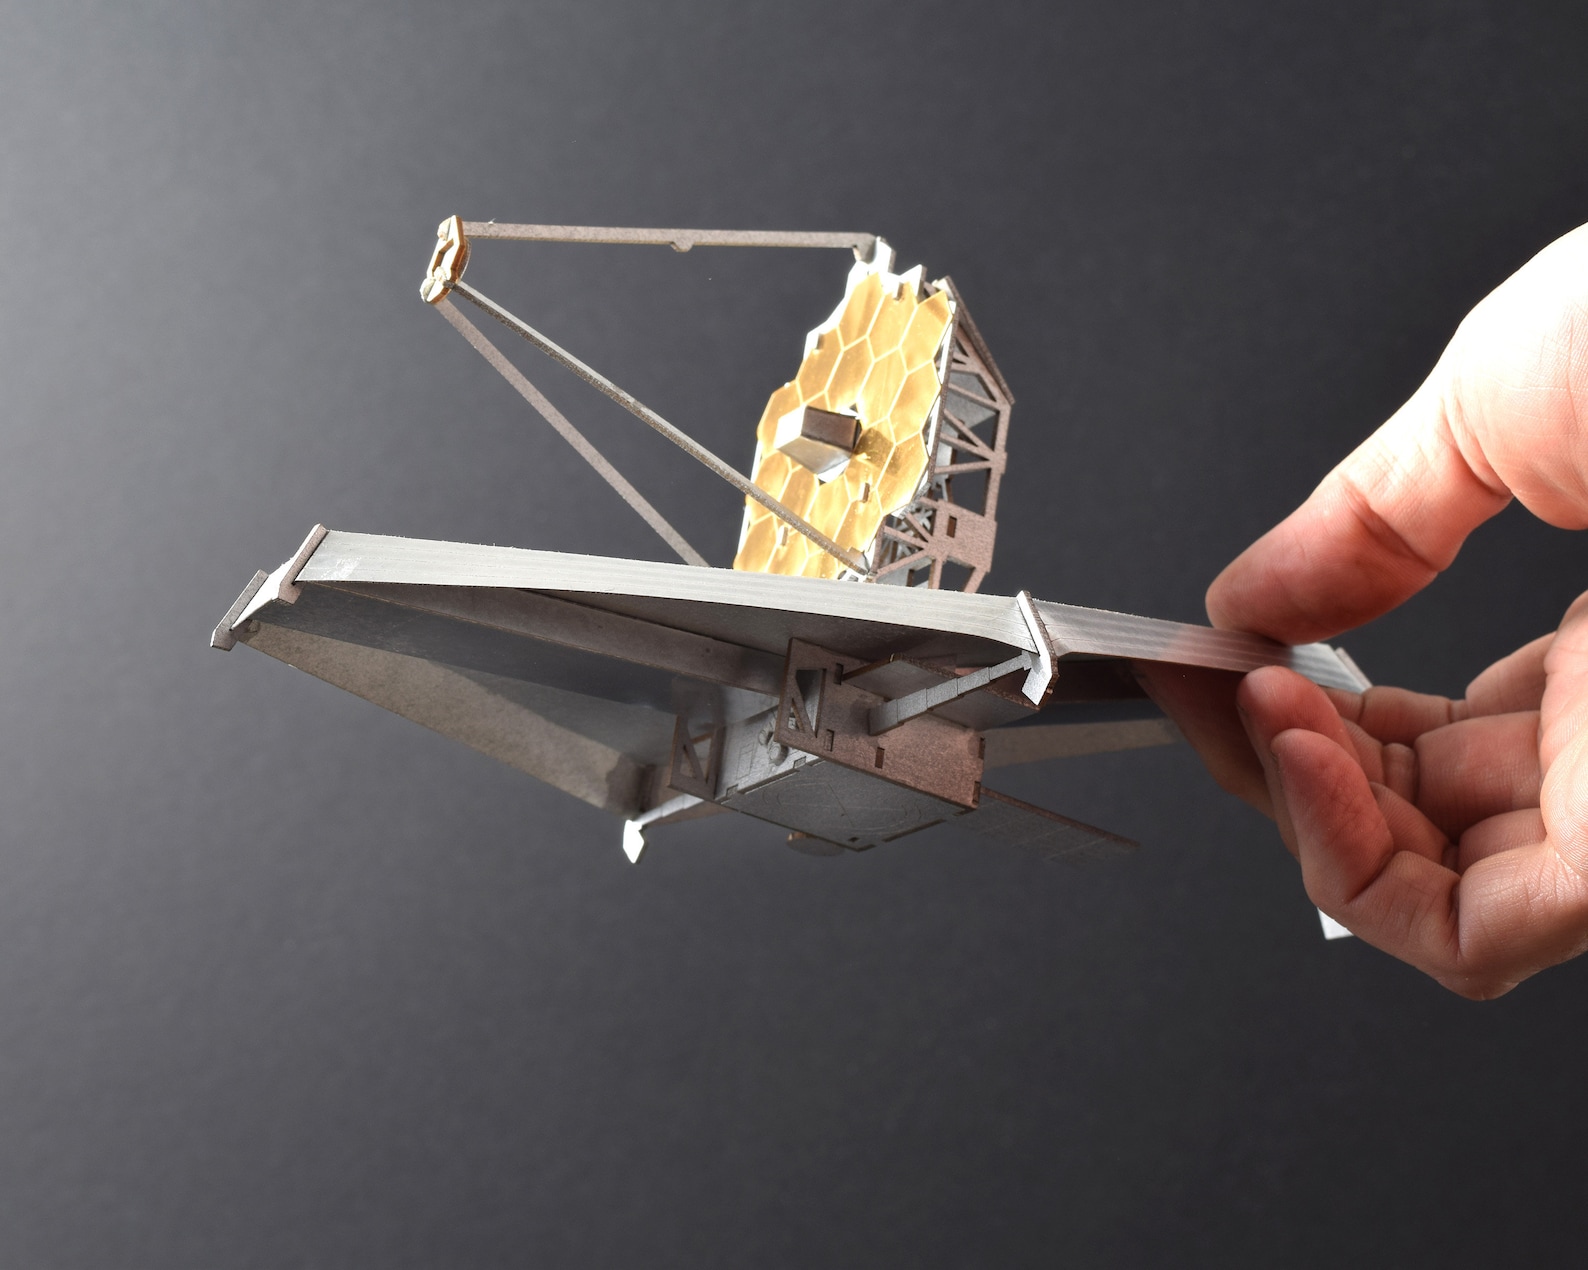 James Webb Space Telescope Model Kit Laser Cut Illustrated | Etsy James Webb Telescope Model Kit